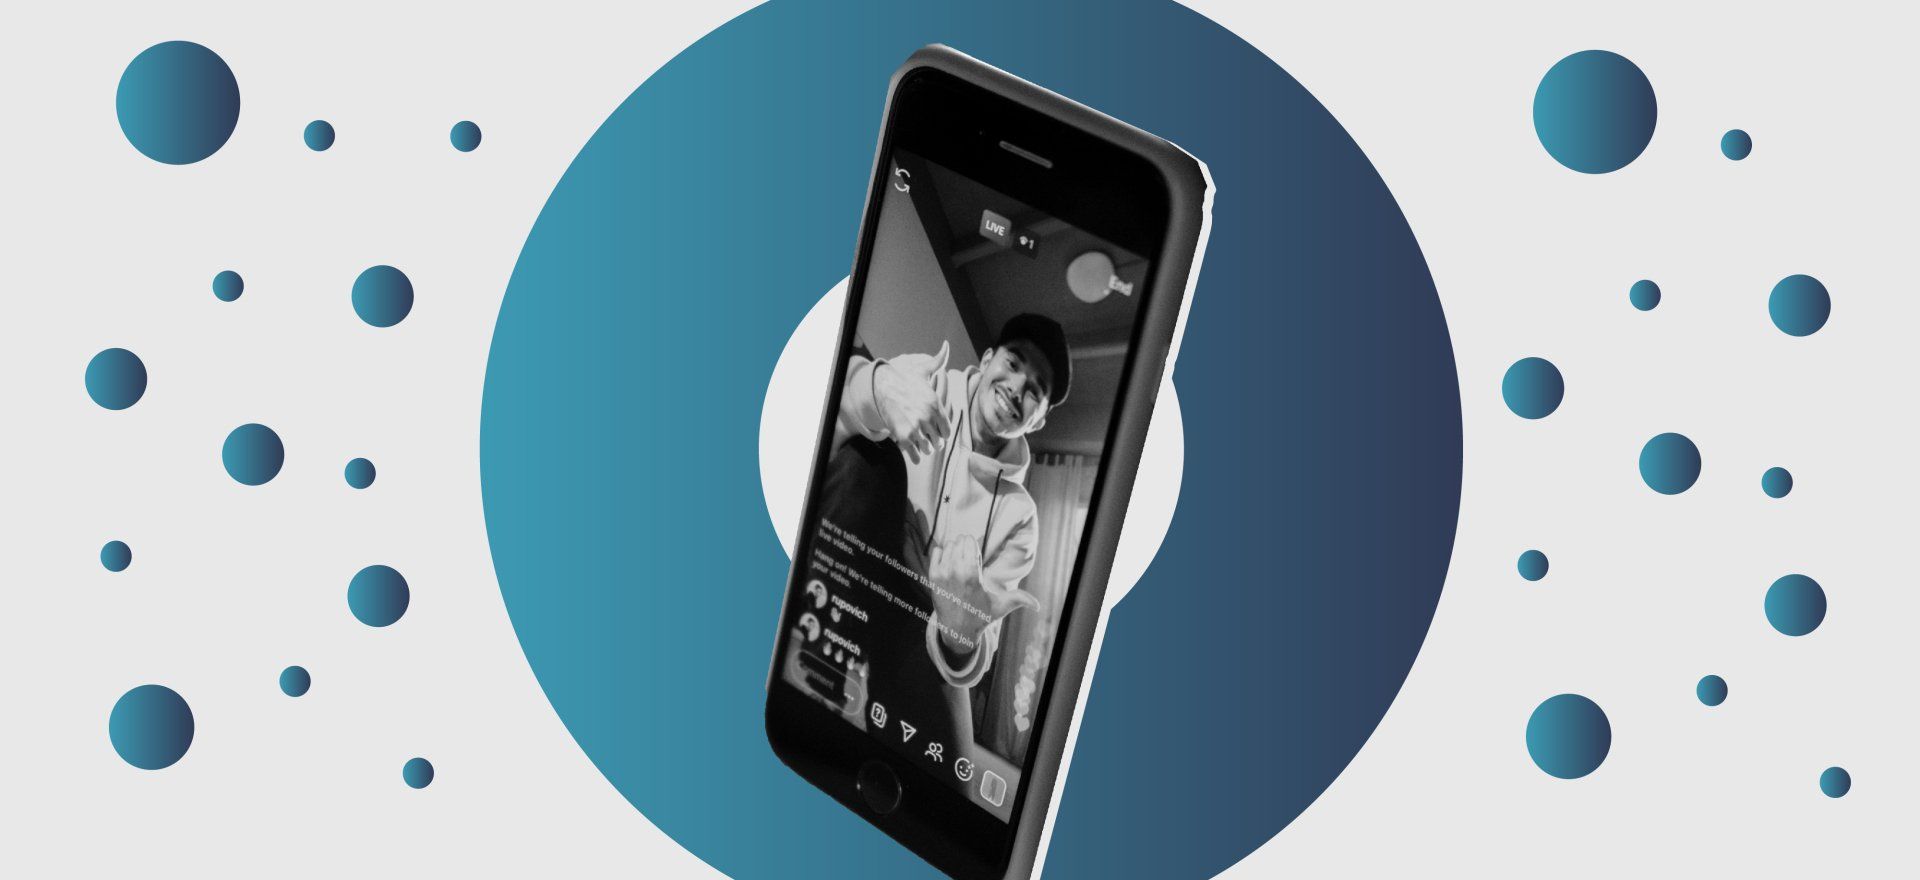 Imagem de celular smartfone com foto de uma pessoa na tela